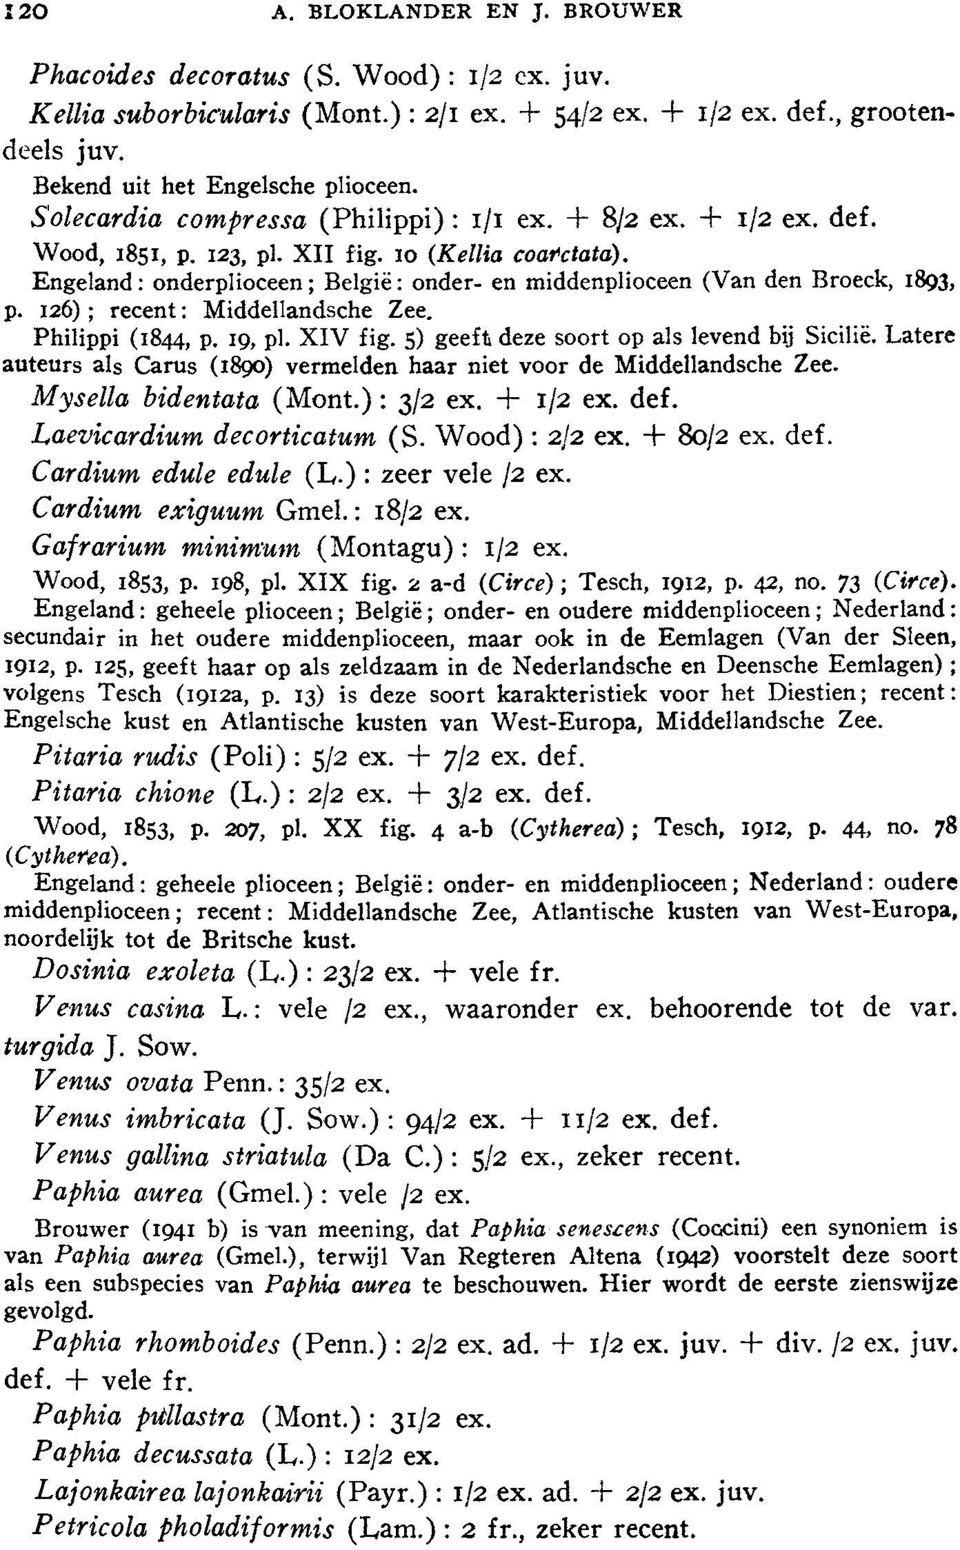 Engeland: onderplioceen; Belgie: onder- en middenplioceen (Van den Broeck, 1893, p. 126); recent: Middellandsche Zee. Philippi (1844, p. 19, pl. XIV fig. 5) geeft deze soort op als levend bij Sicilie.